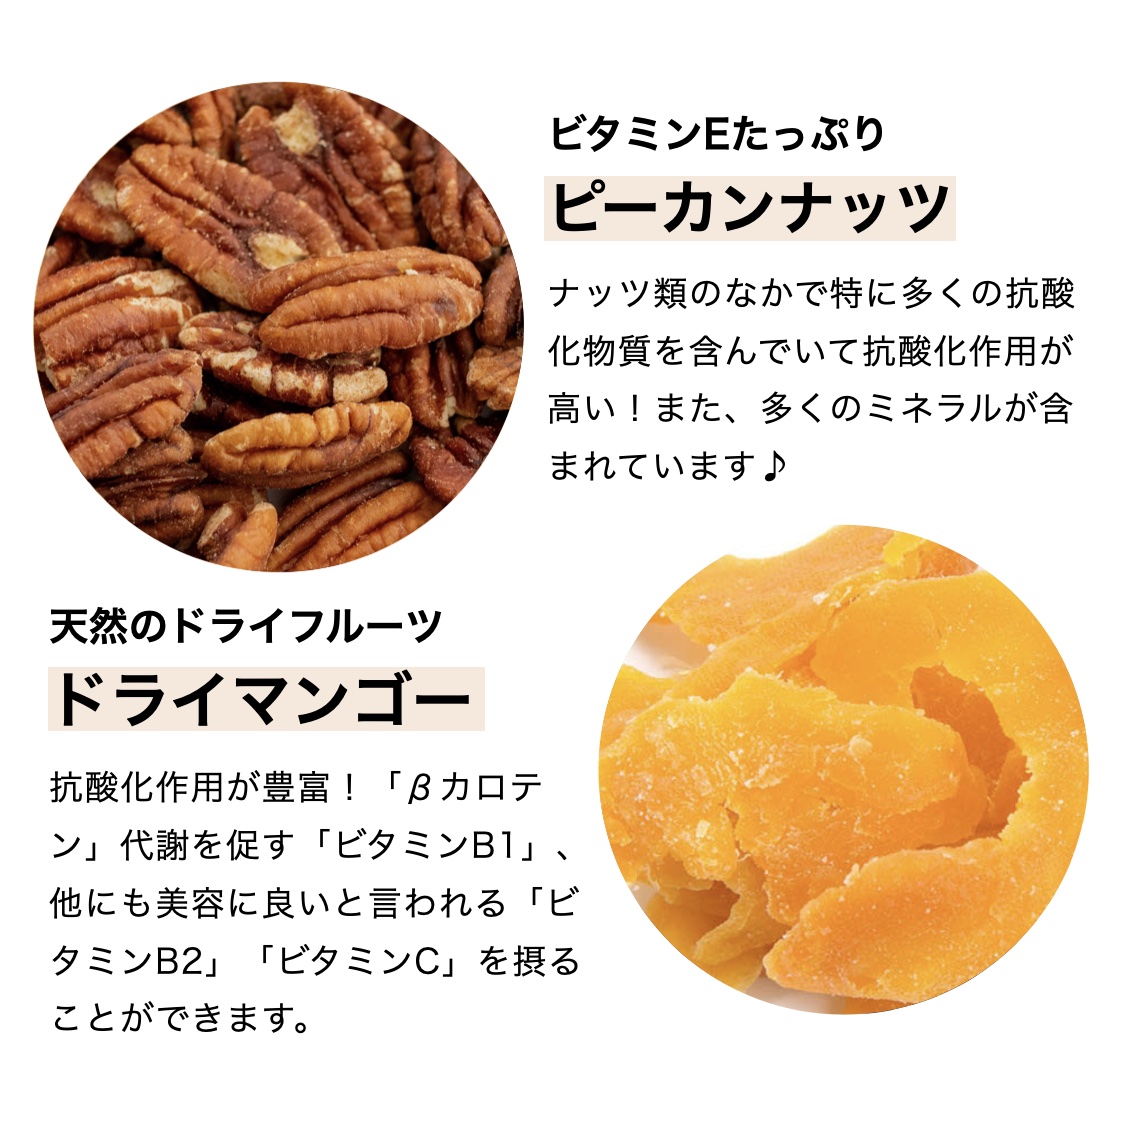 こうねんきっすに入っているピーカンナッツとドライマンゴーの栄養価と効果について説明している画像イメージ